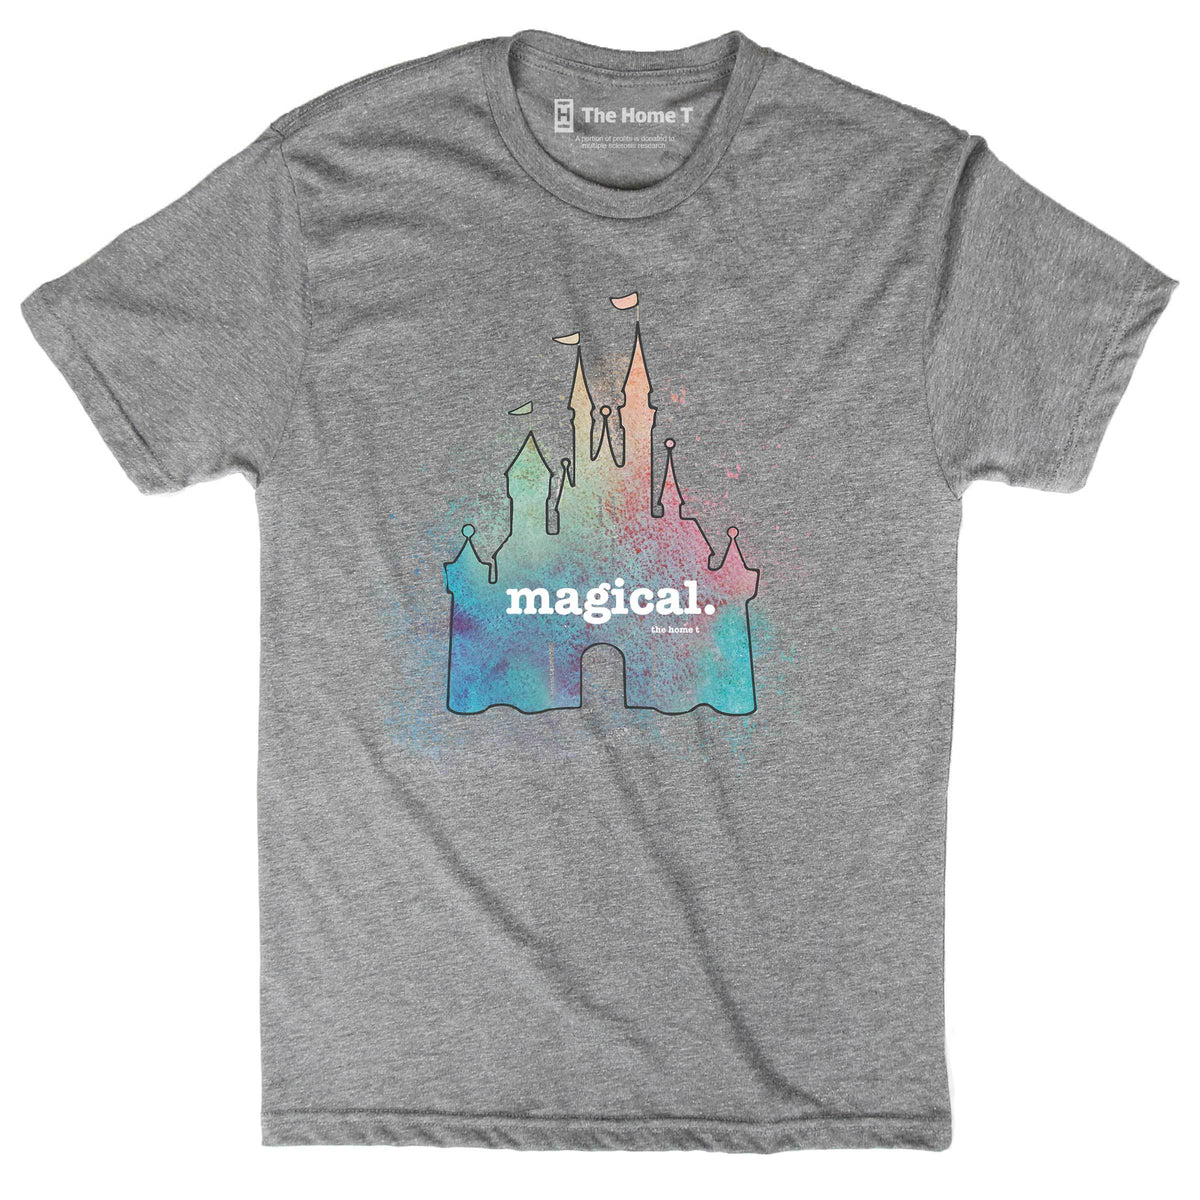 Magical Castle